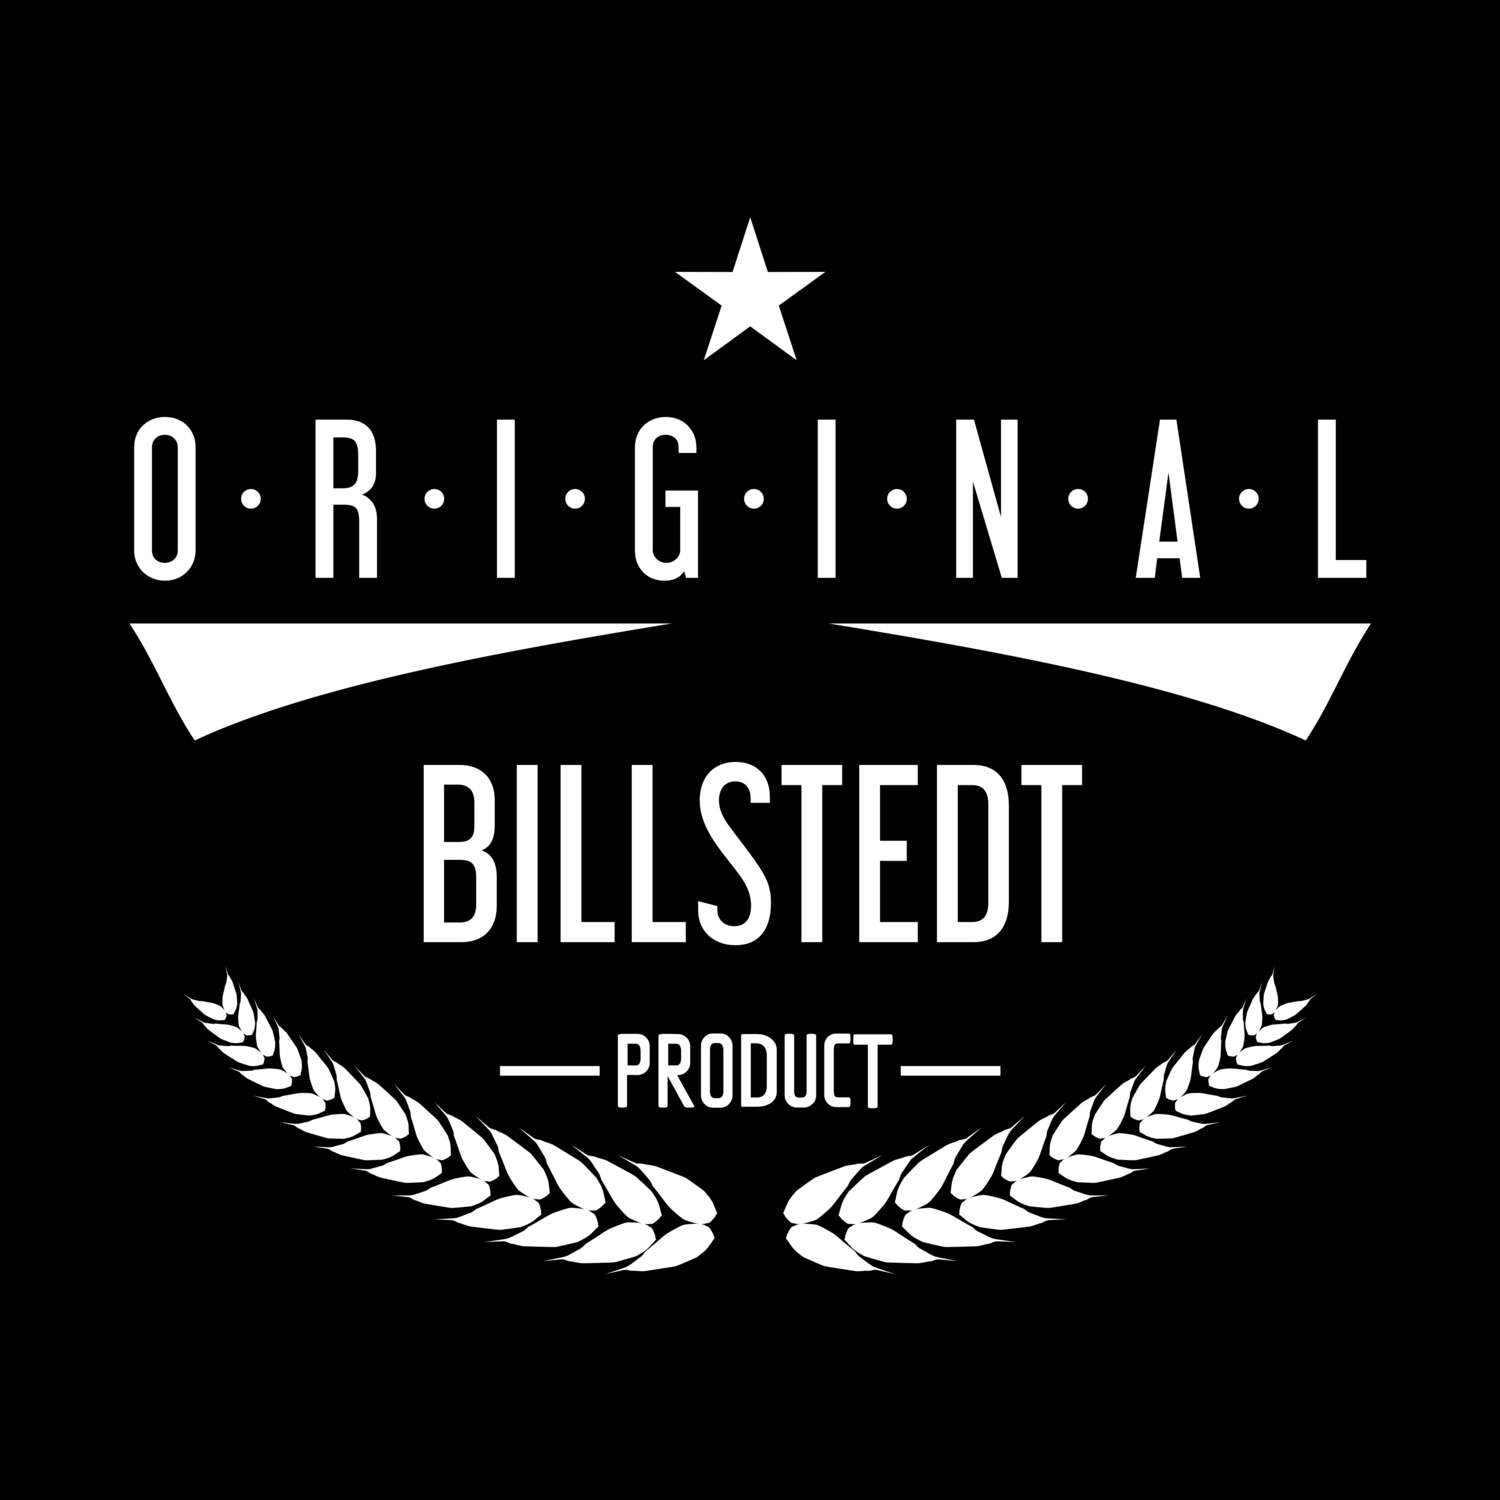 Billstedt T-Shirt »Original Product«